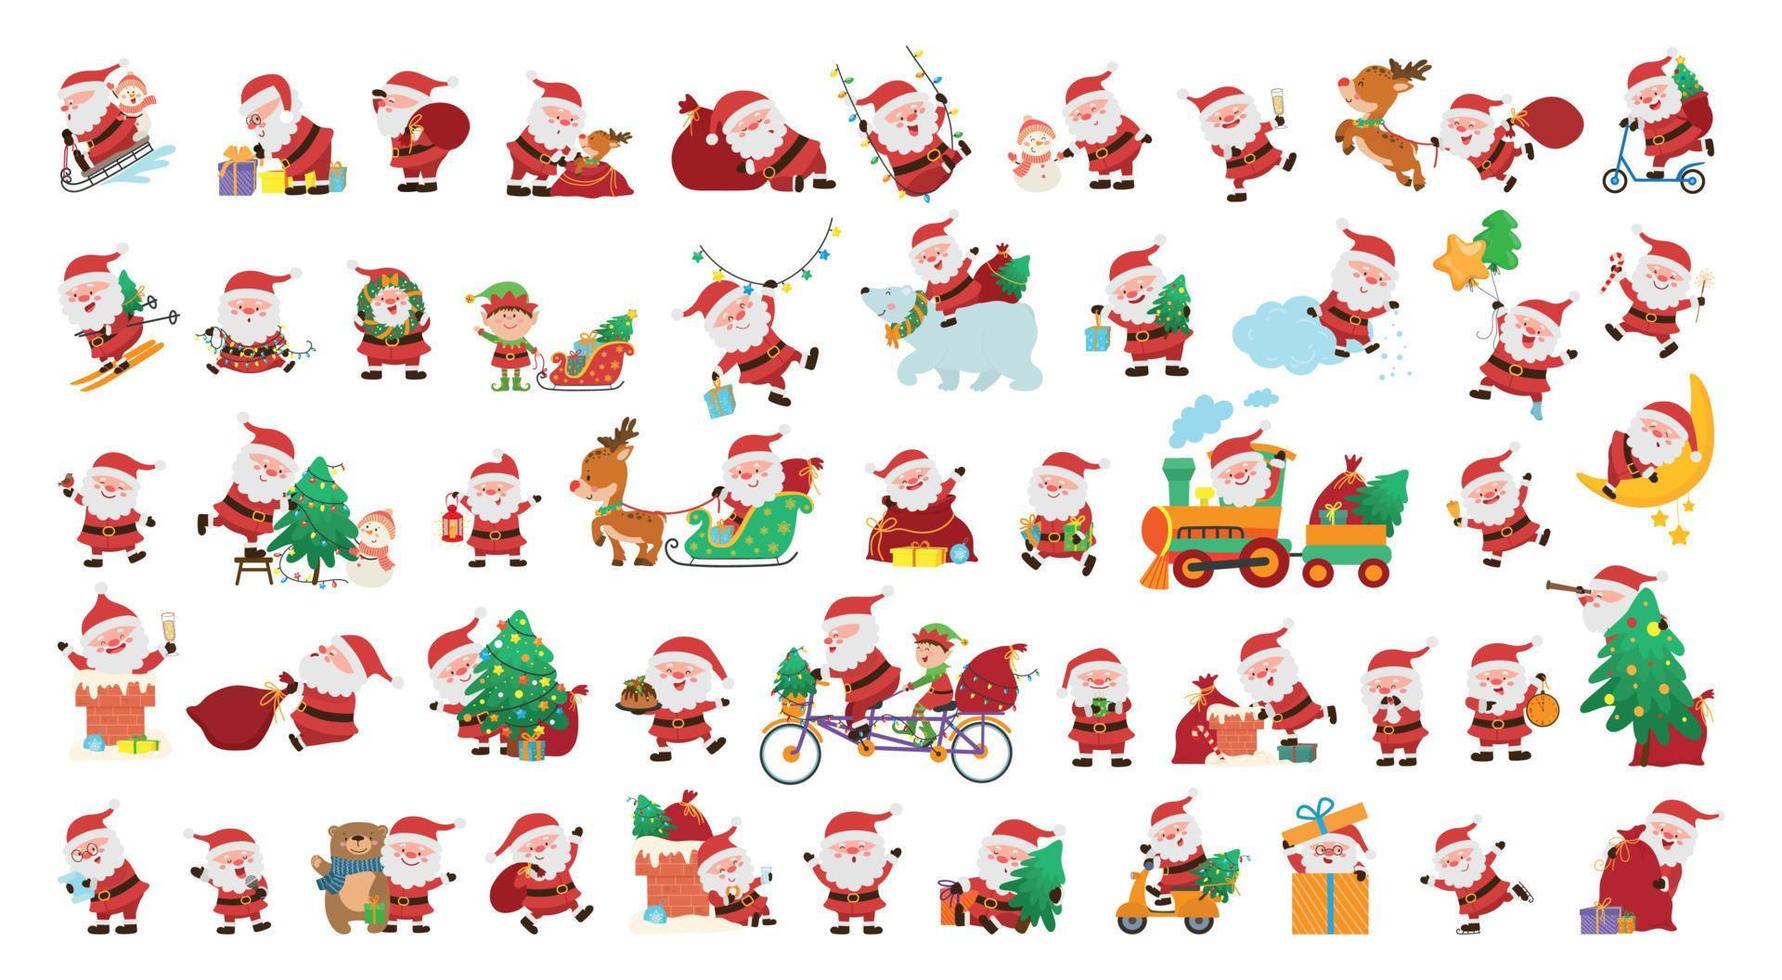 illustrazioni vettoriali con personaggi natalizi